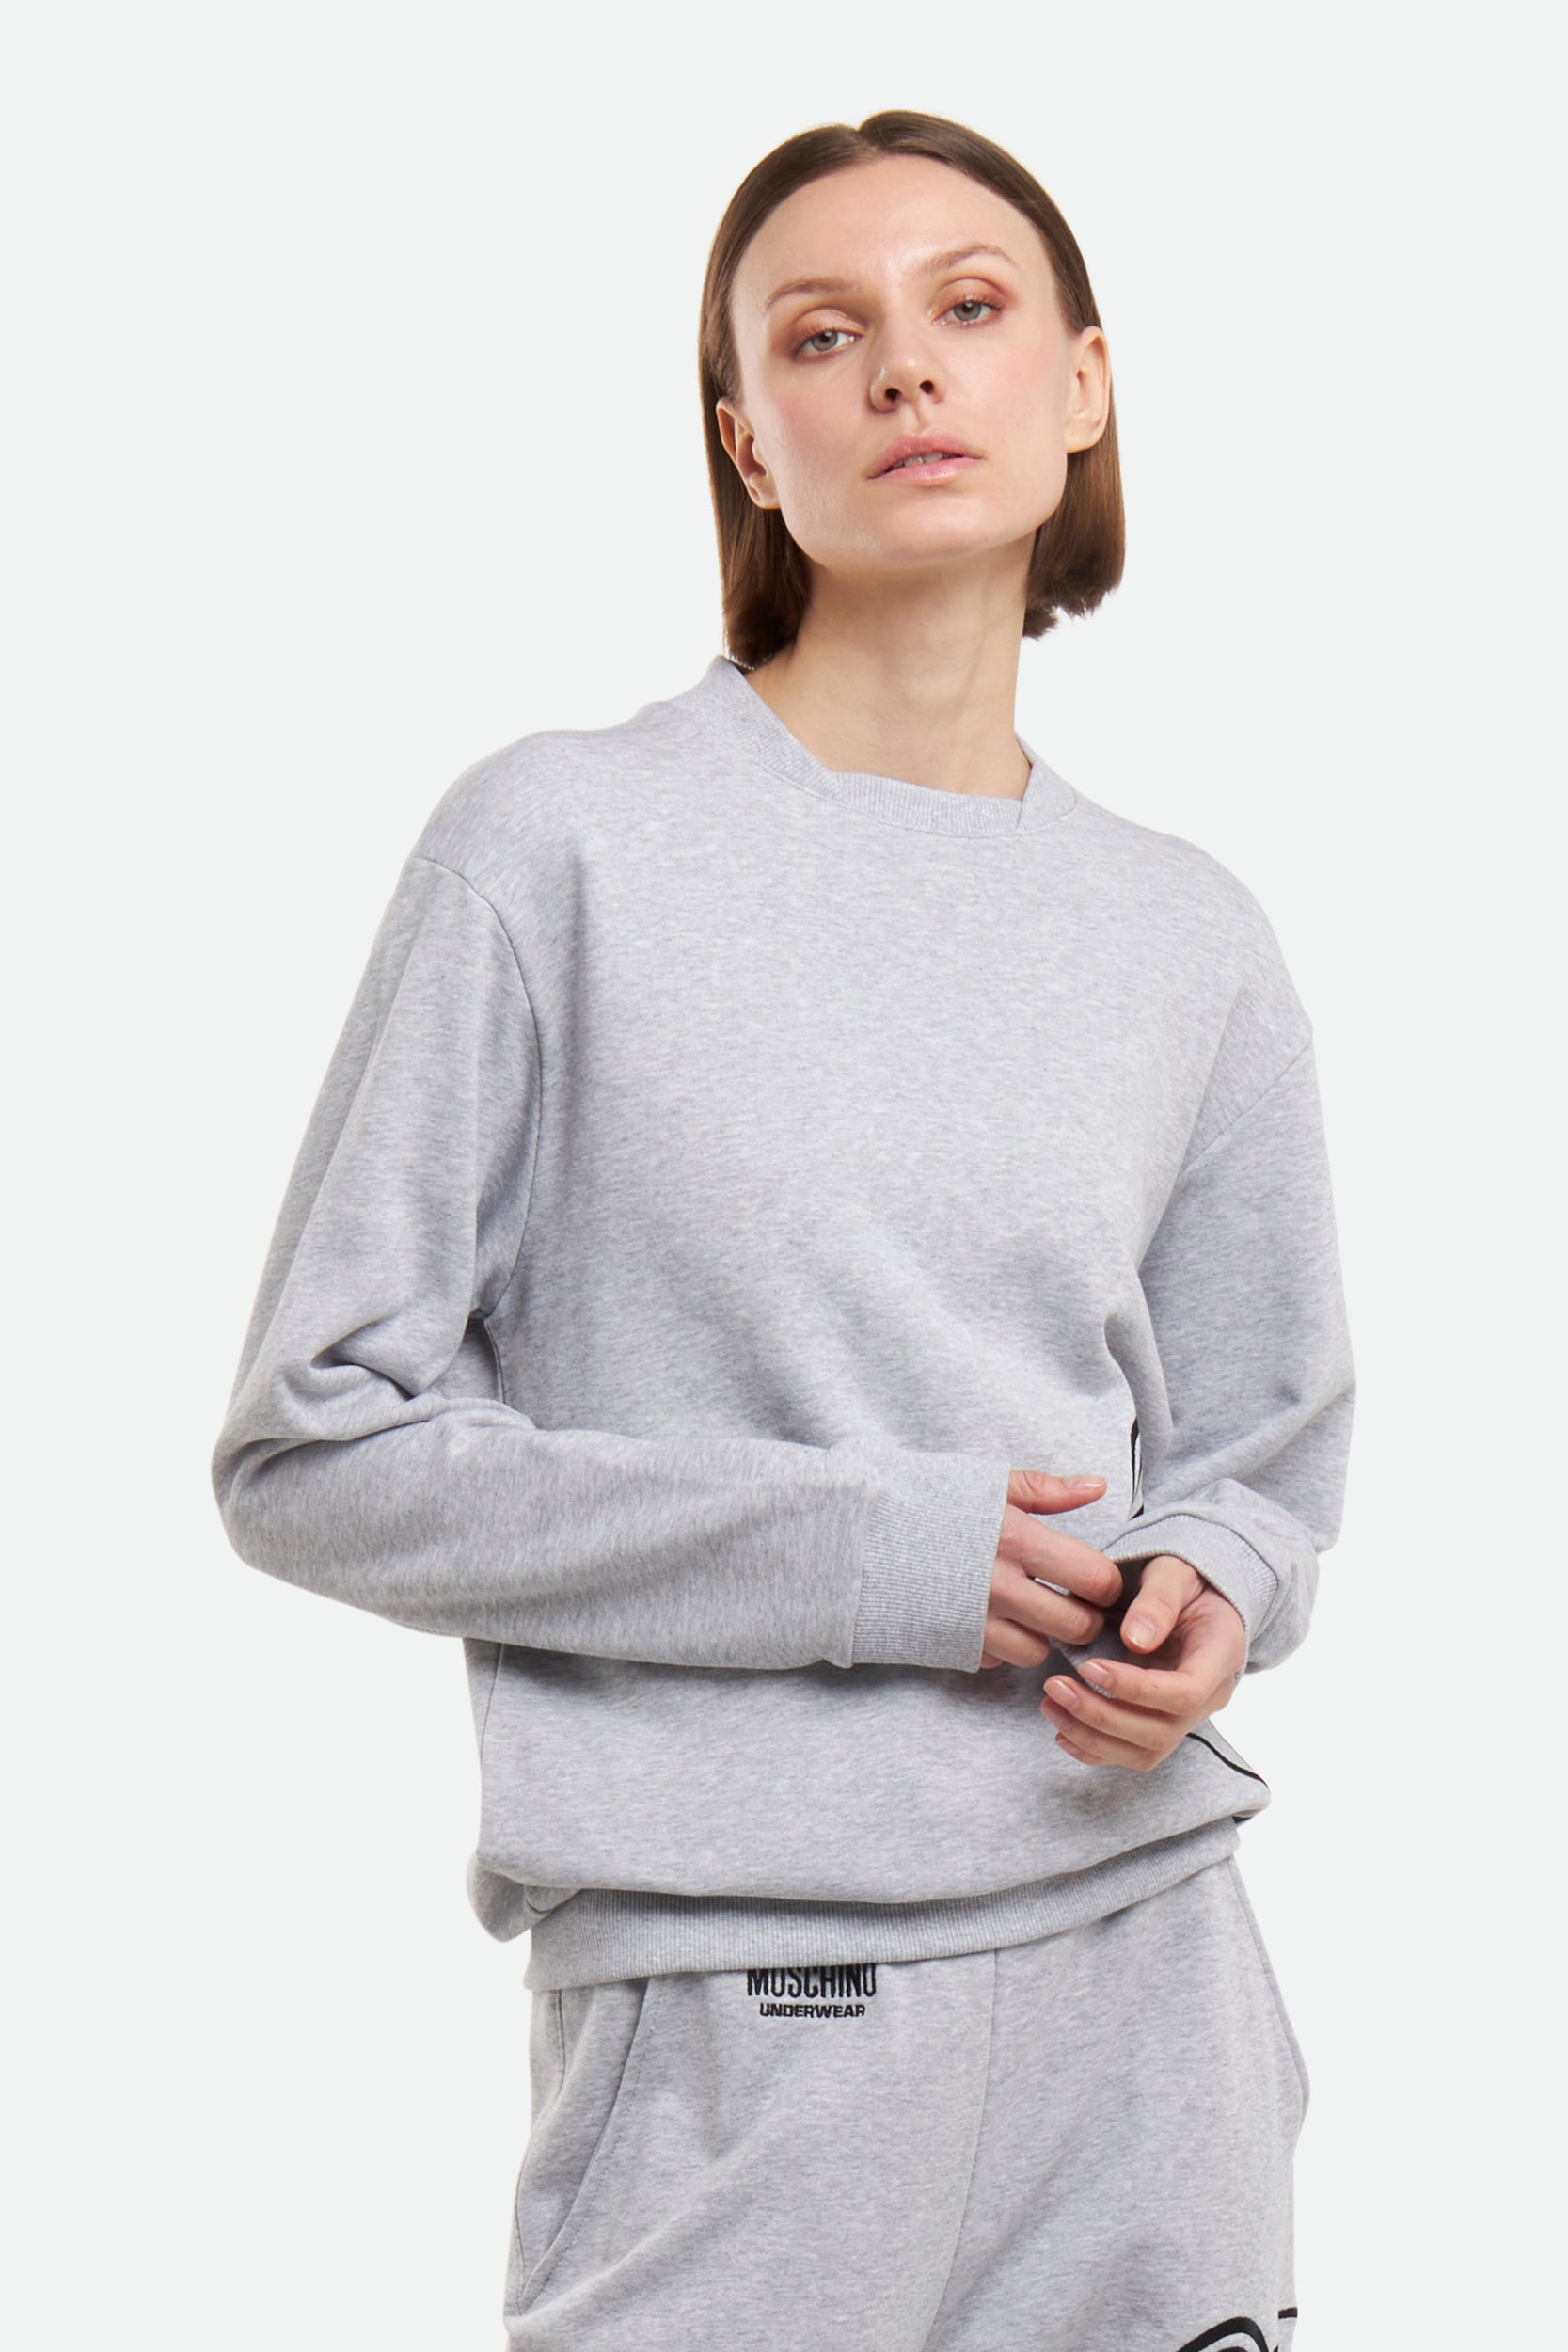 Moschino Gray Sweatshirt